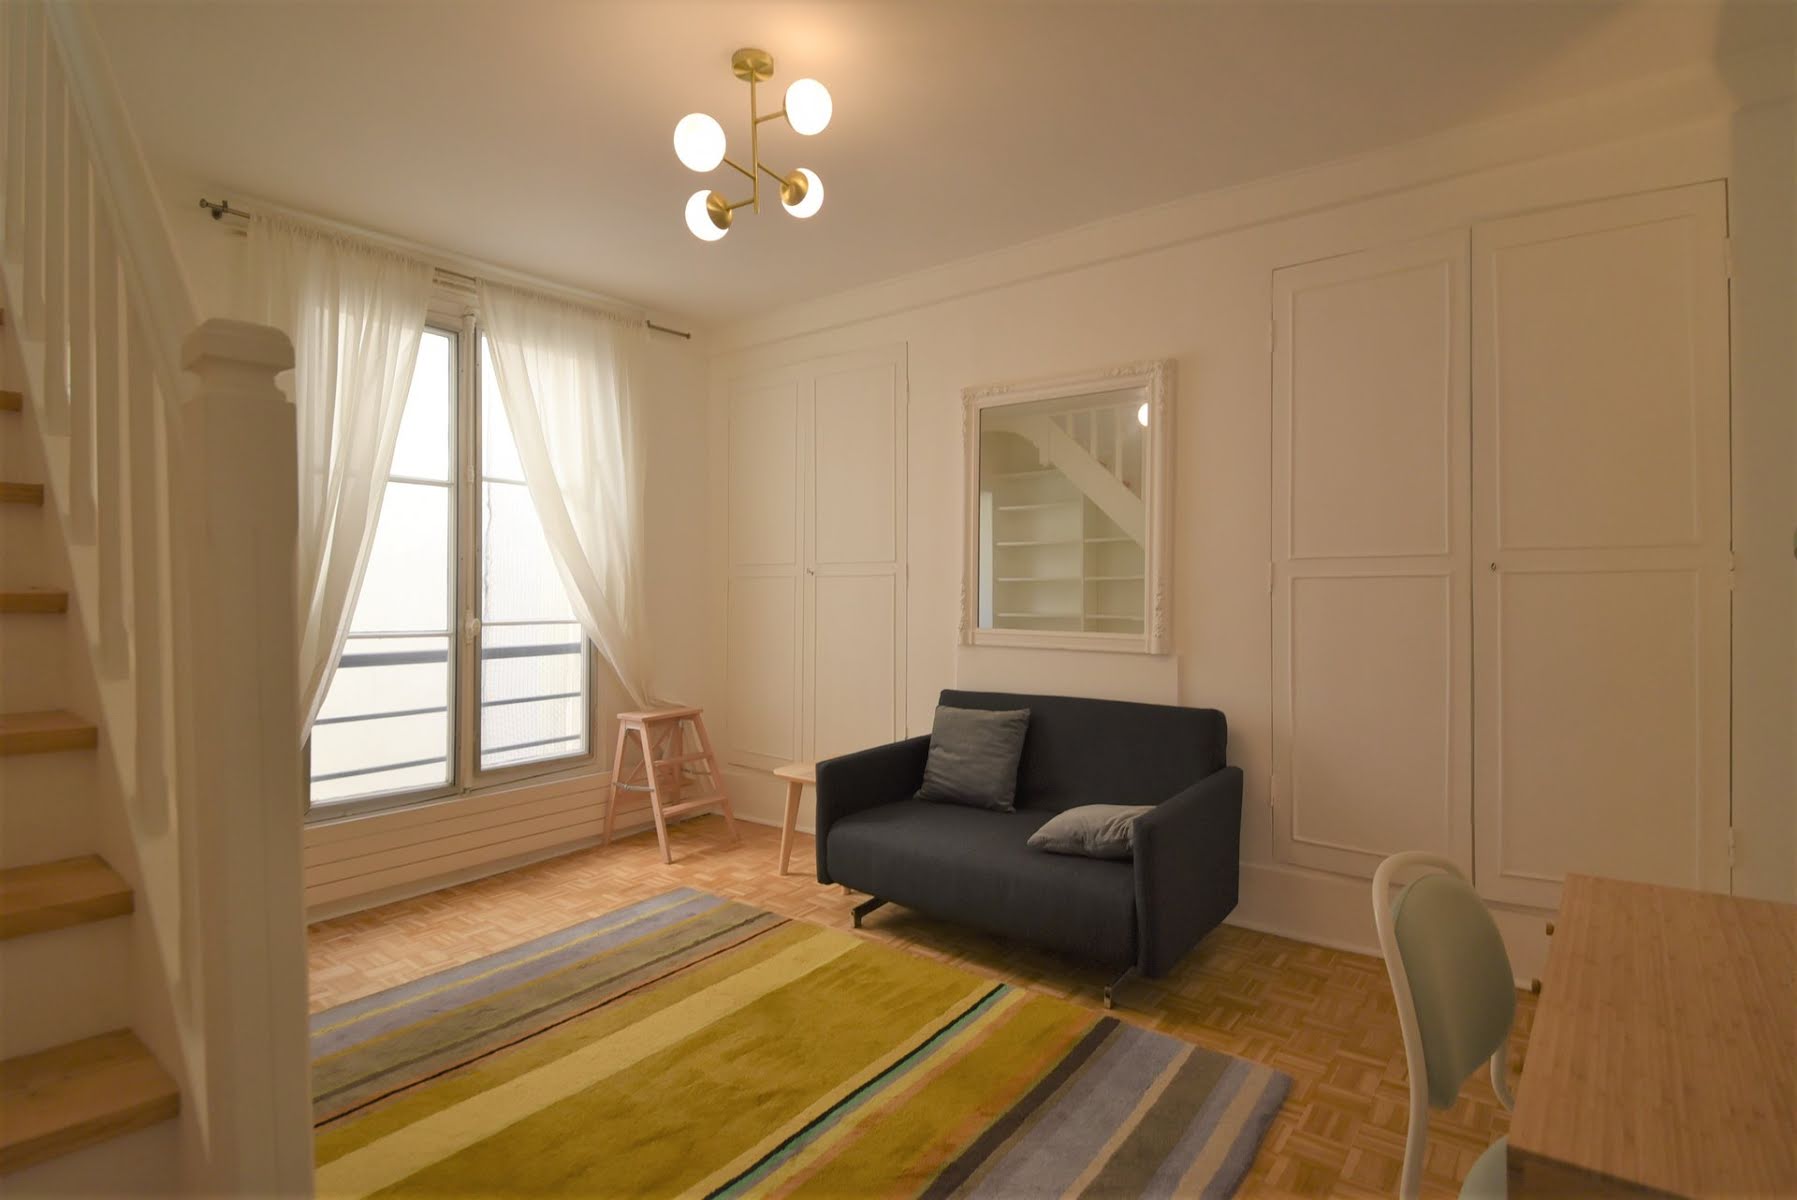 Location appartement meublé 4 pièces 70,2 m2